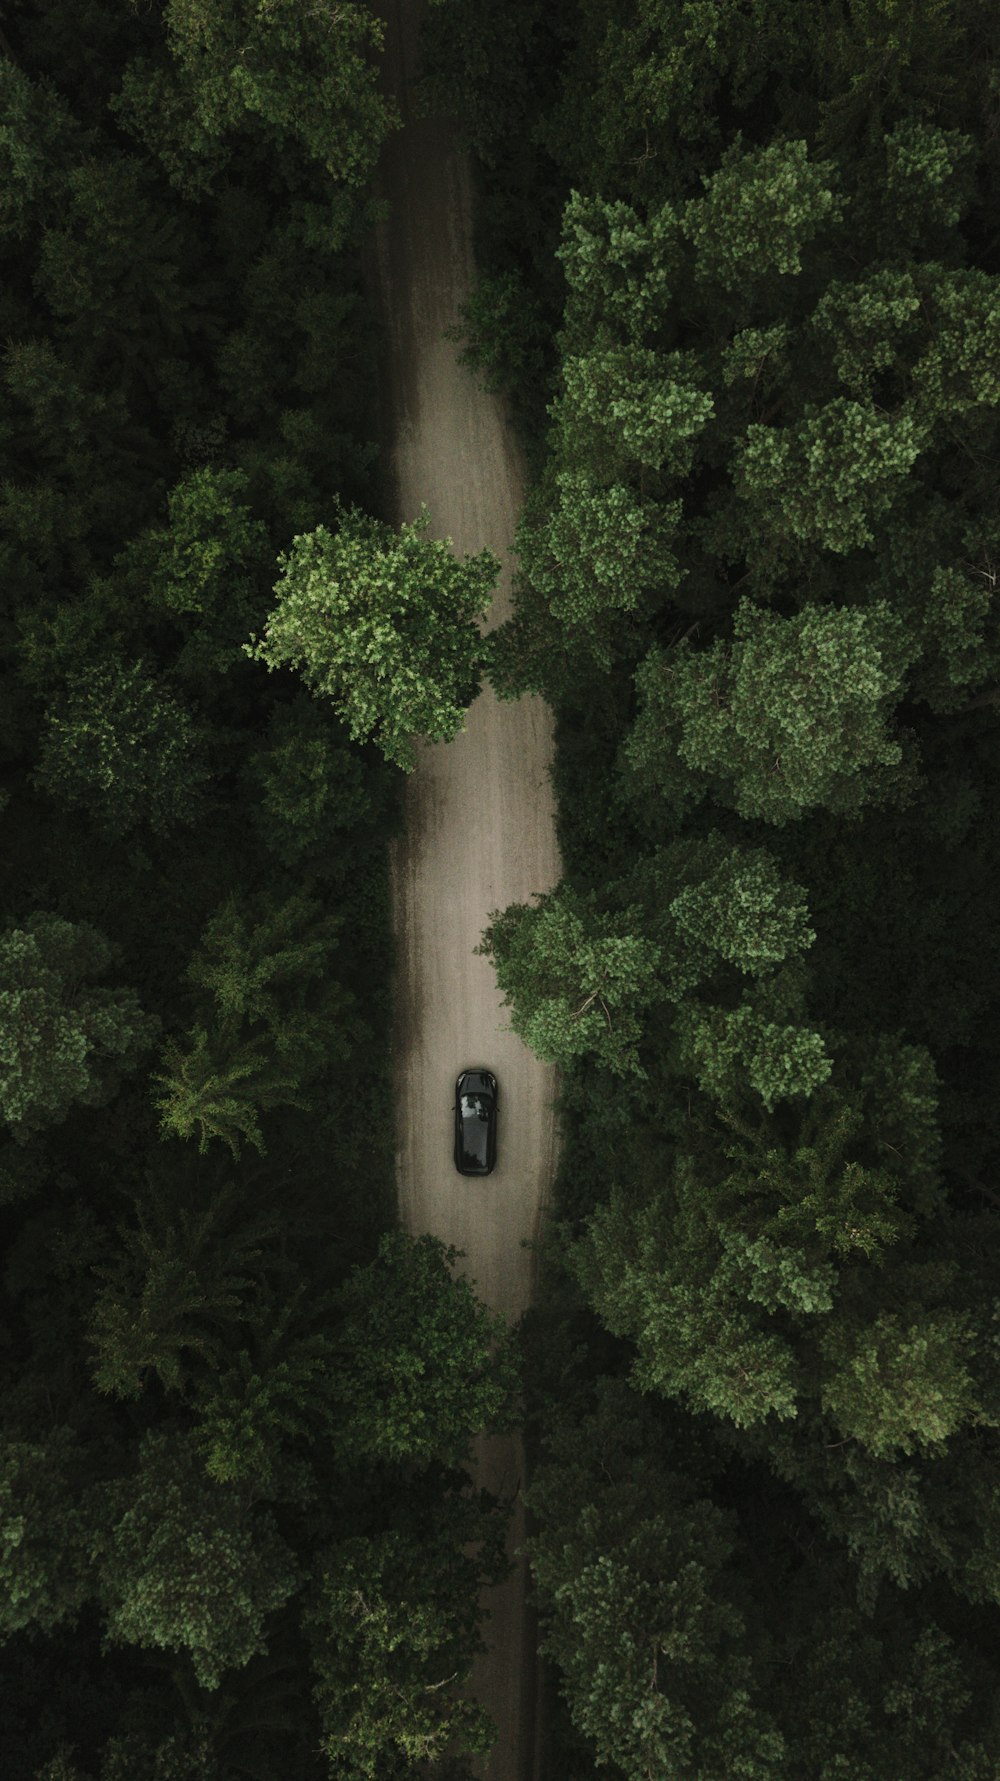 carro preto na estrada perto de árvores verdes durante o dia